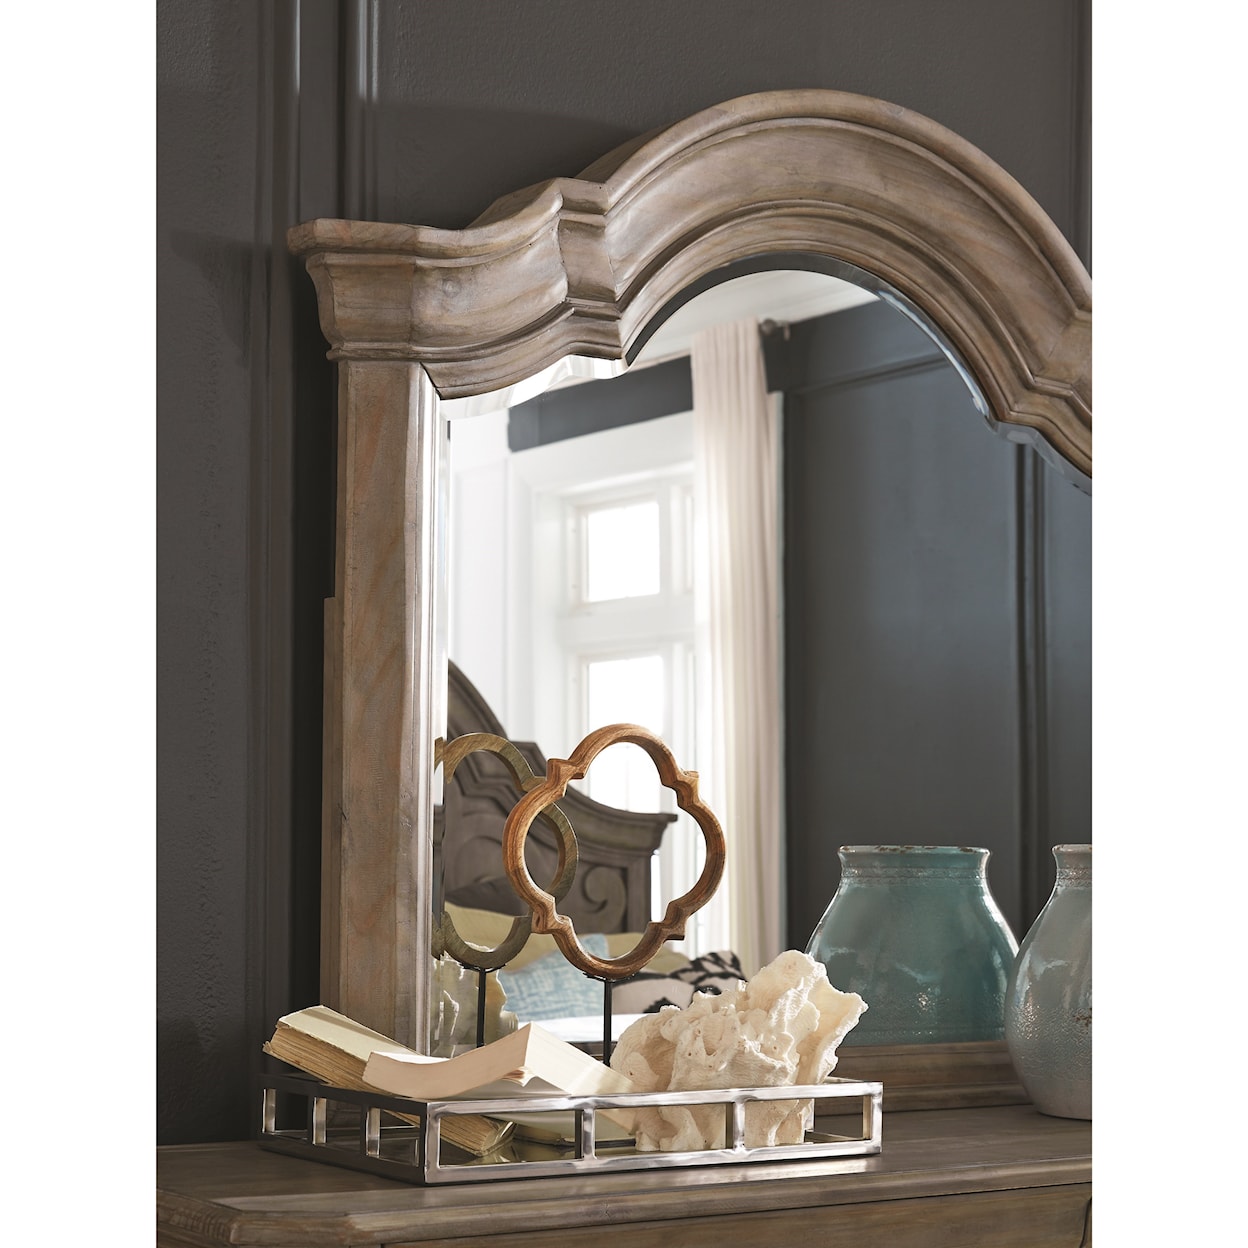 Magnussen Home Tinley Park Bedroom 8-Drawer Dresser & Mirror Set